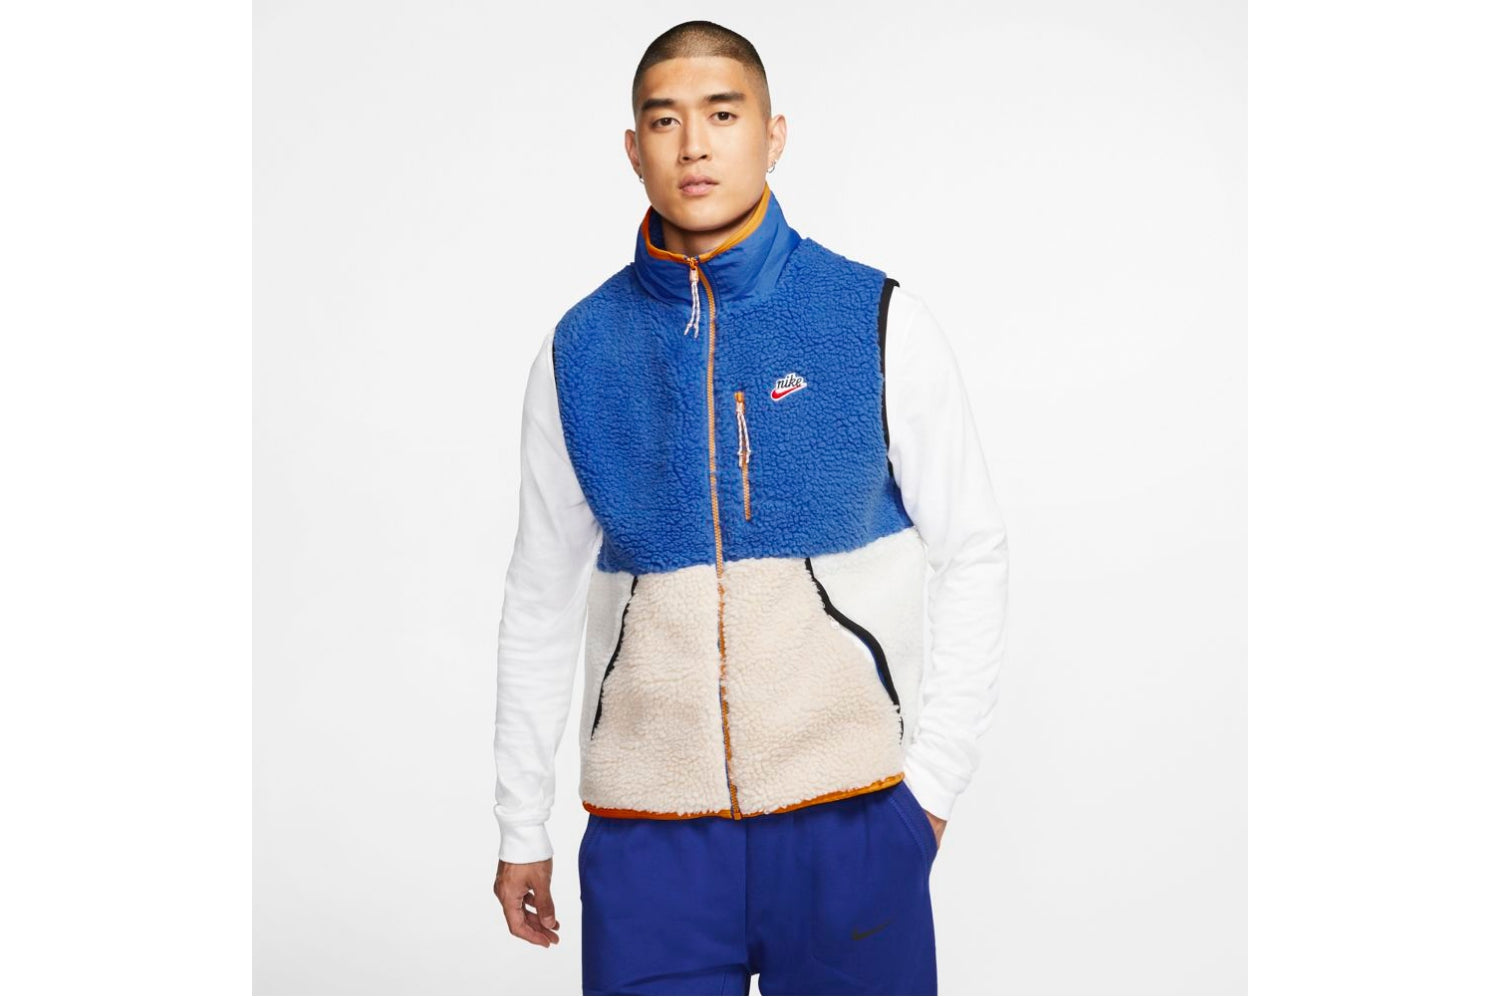 nike men's sherpa fleece vest